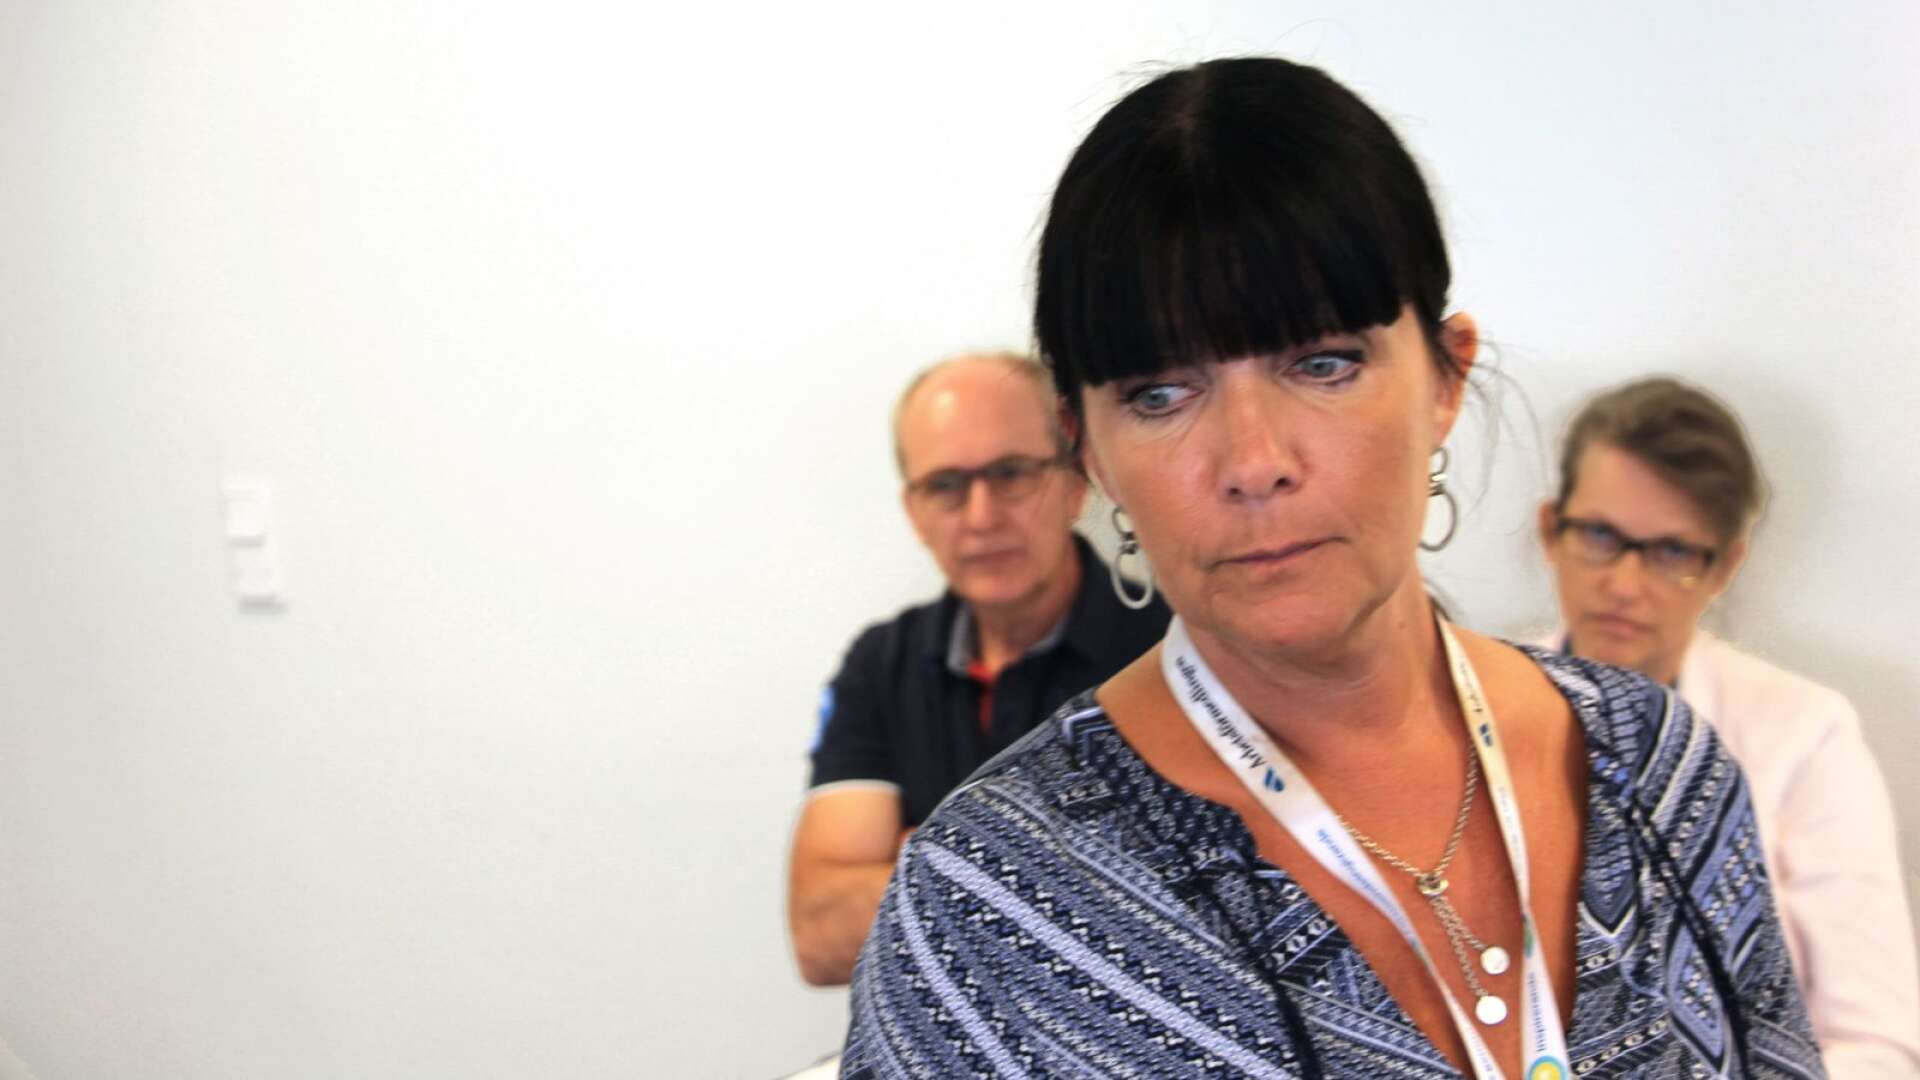 Lena Hertzberg (längst fram), enhetschef på Arbetsförmedlingen i Värmland, anser att varselläget är bekymmersamt. 